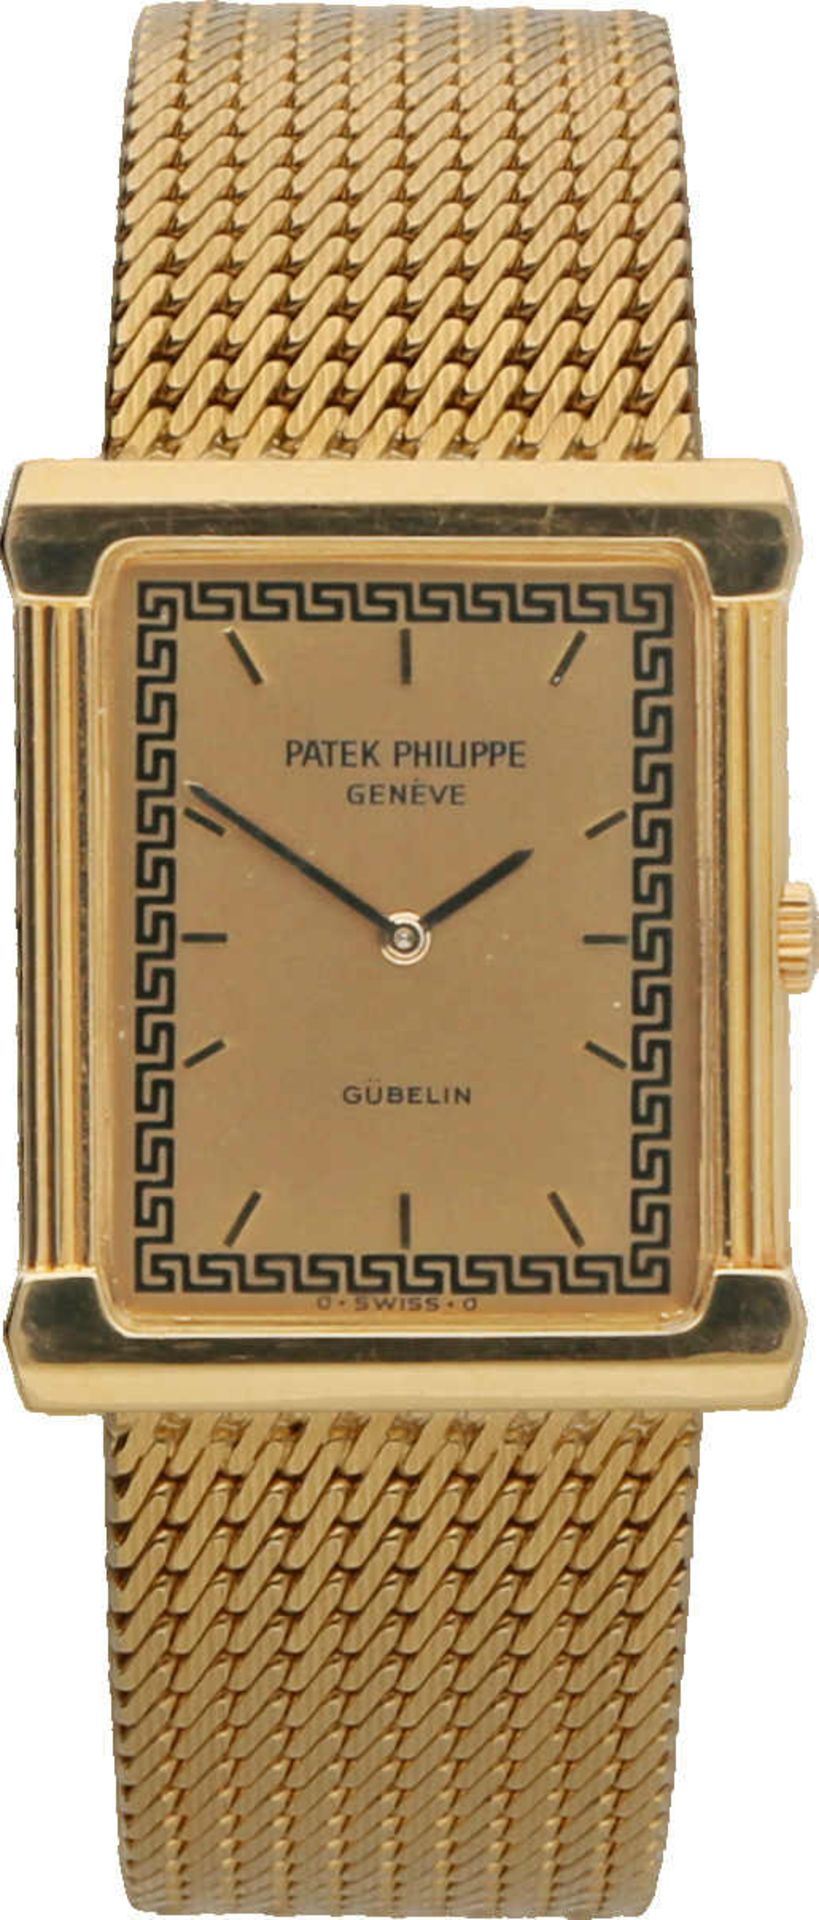 PATEK PHILIPPE Les Grecques Gondolo, Gelbgold 18K, Referenz 3775/1, Herstellungsjahr 1988,